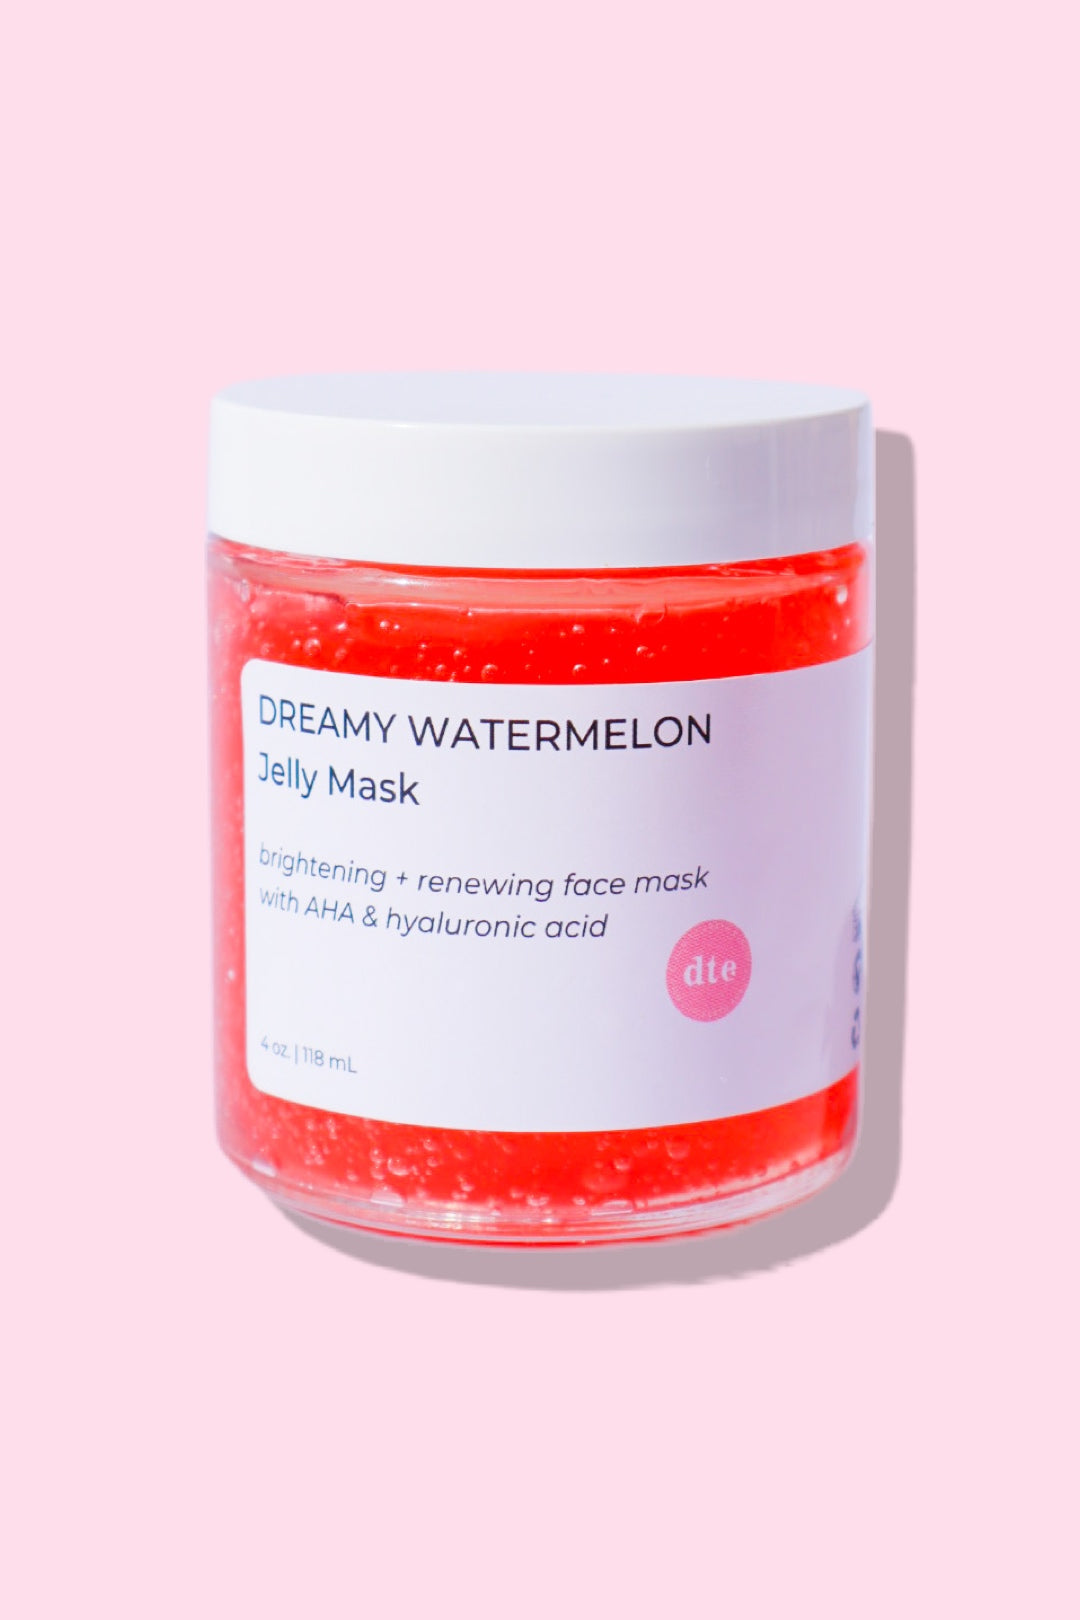 Dreamy Watermelon Jelly Mask